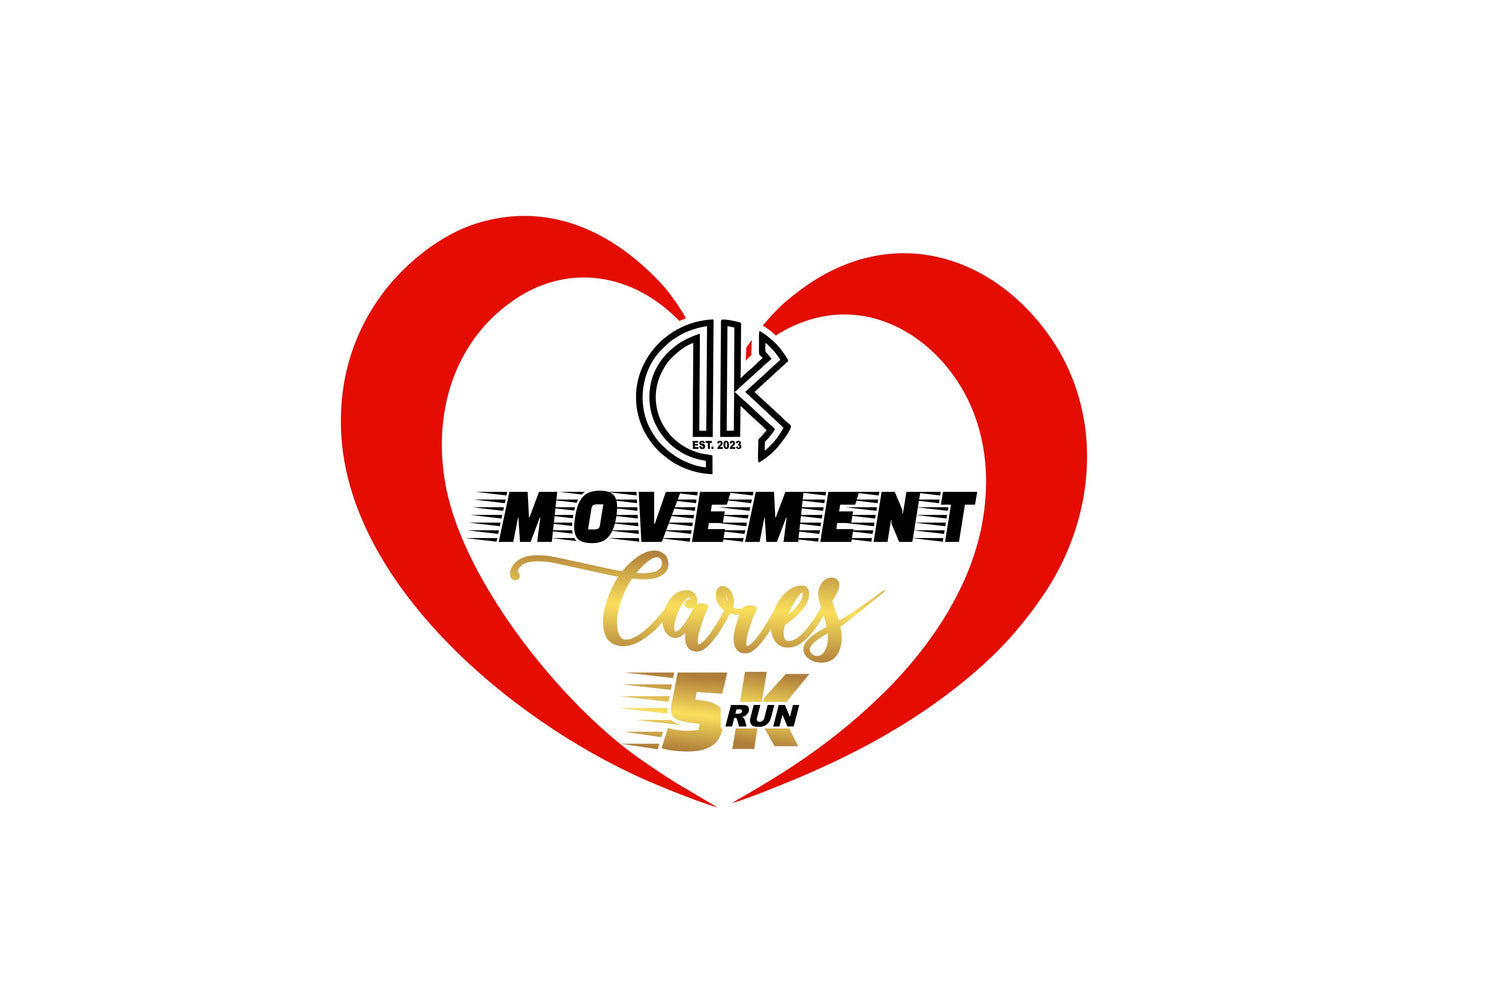 DK Movement Cares 5K Run logo